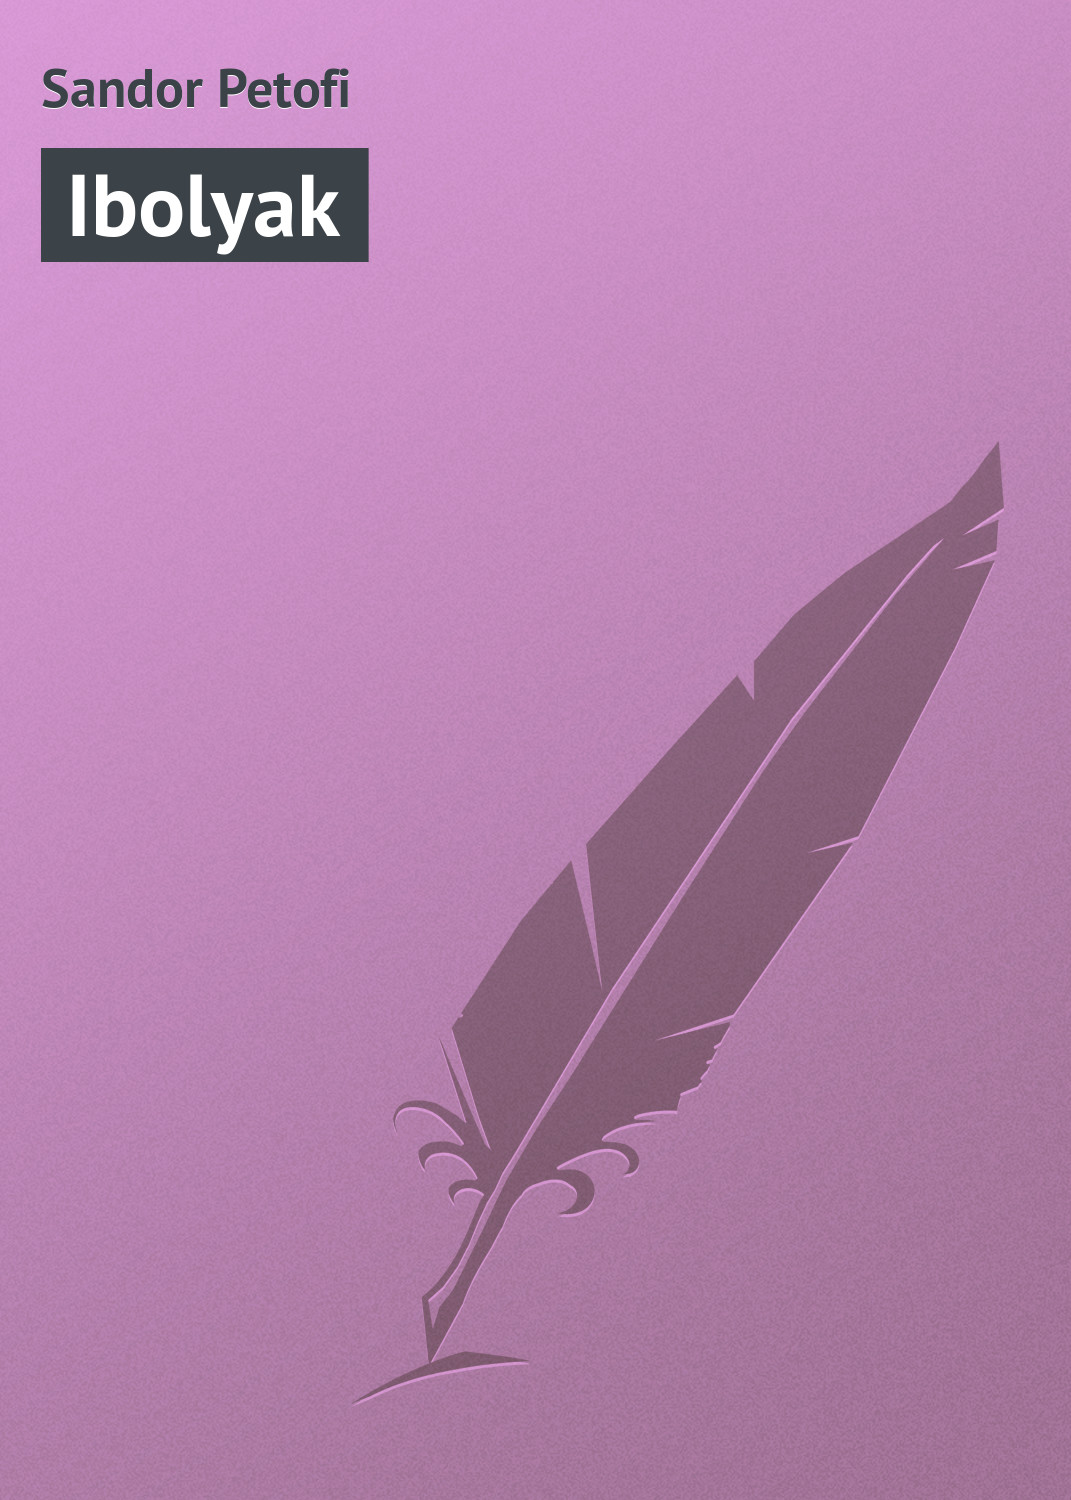 Книга Ibolyak из серии , созданная Sandor Petofi, может относится к жанру Зарубежная старинная литература, Зарубежная классика. Стоимость электронной книги Ibolyak с идентификатором 21102726 составляет 5.99 руб.